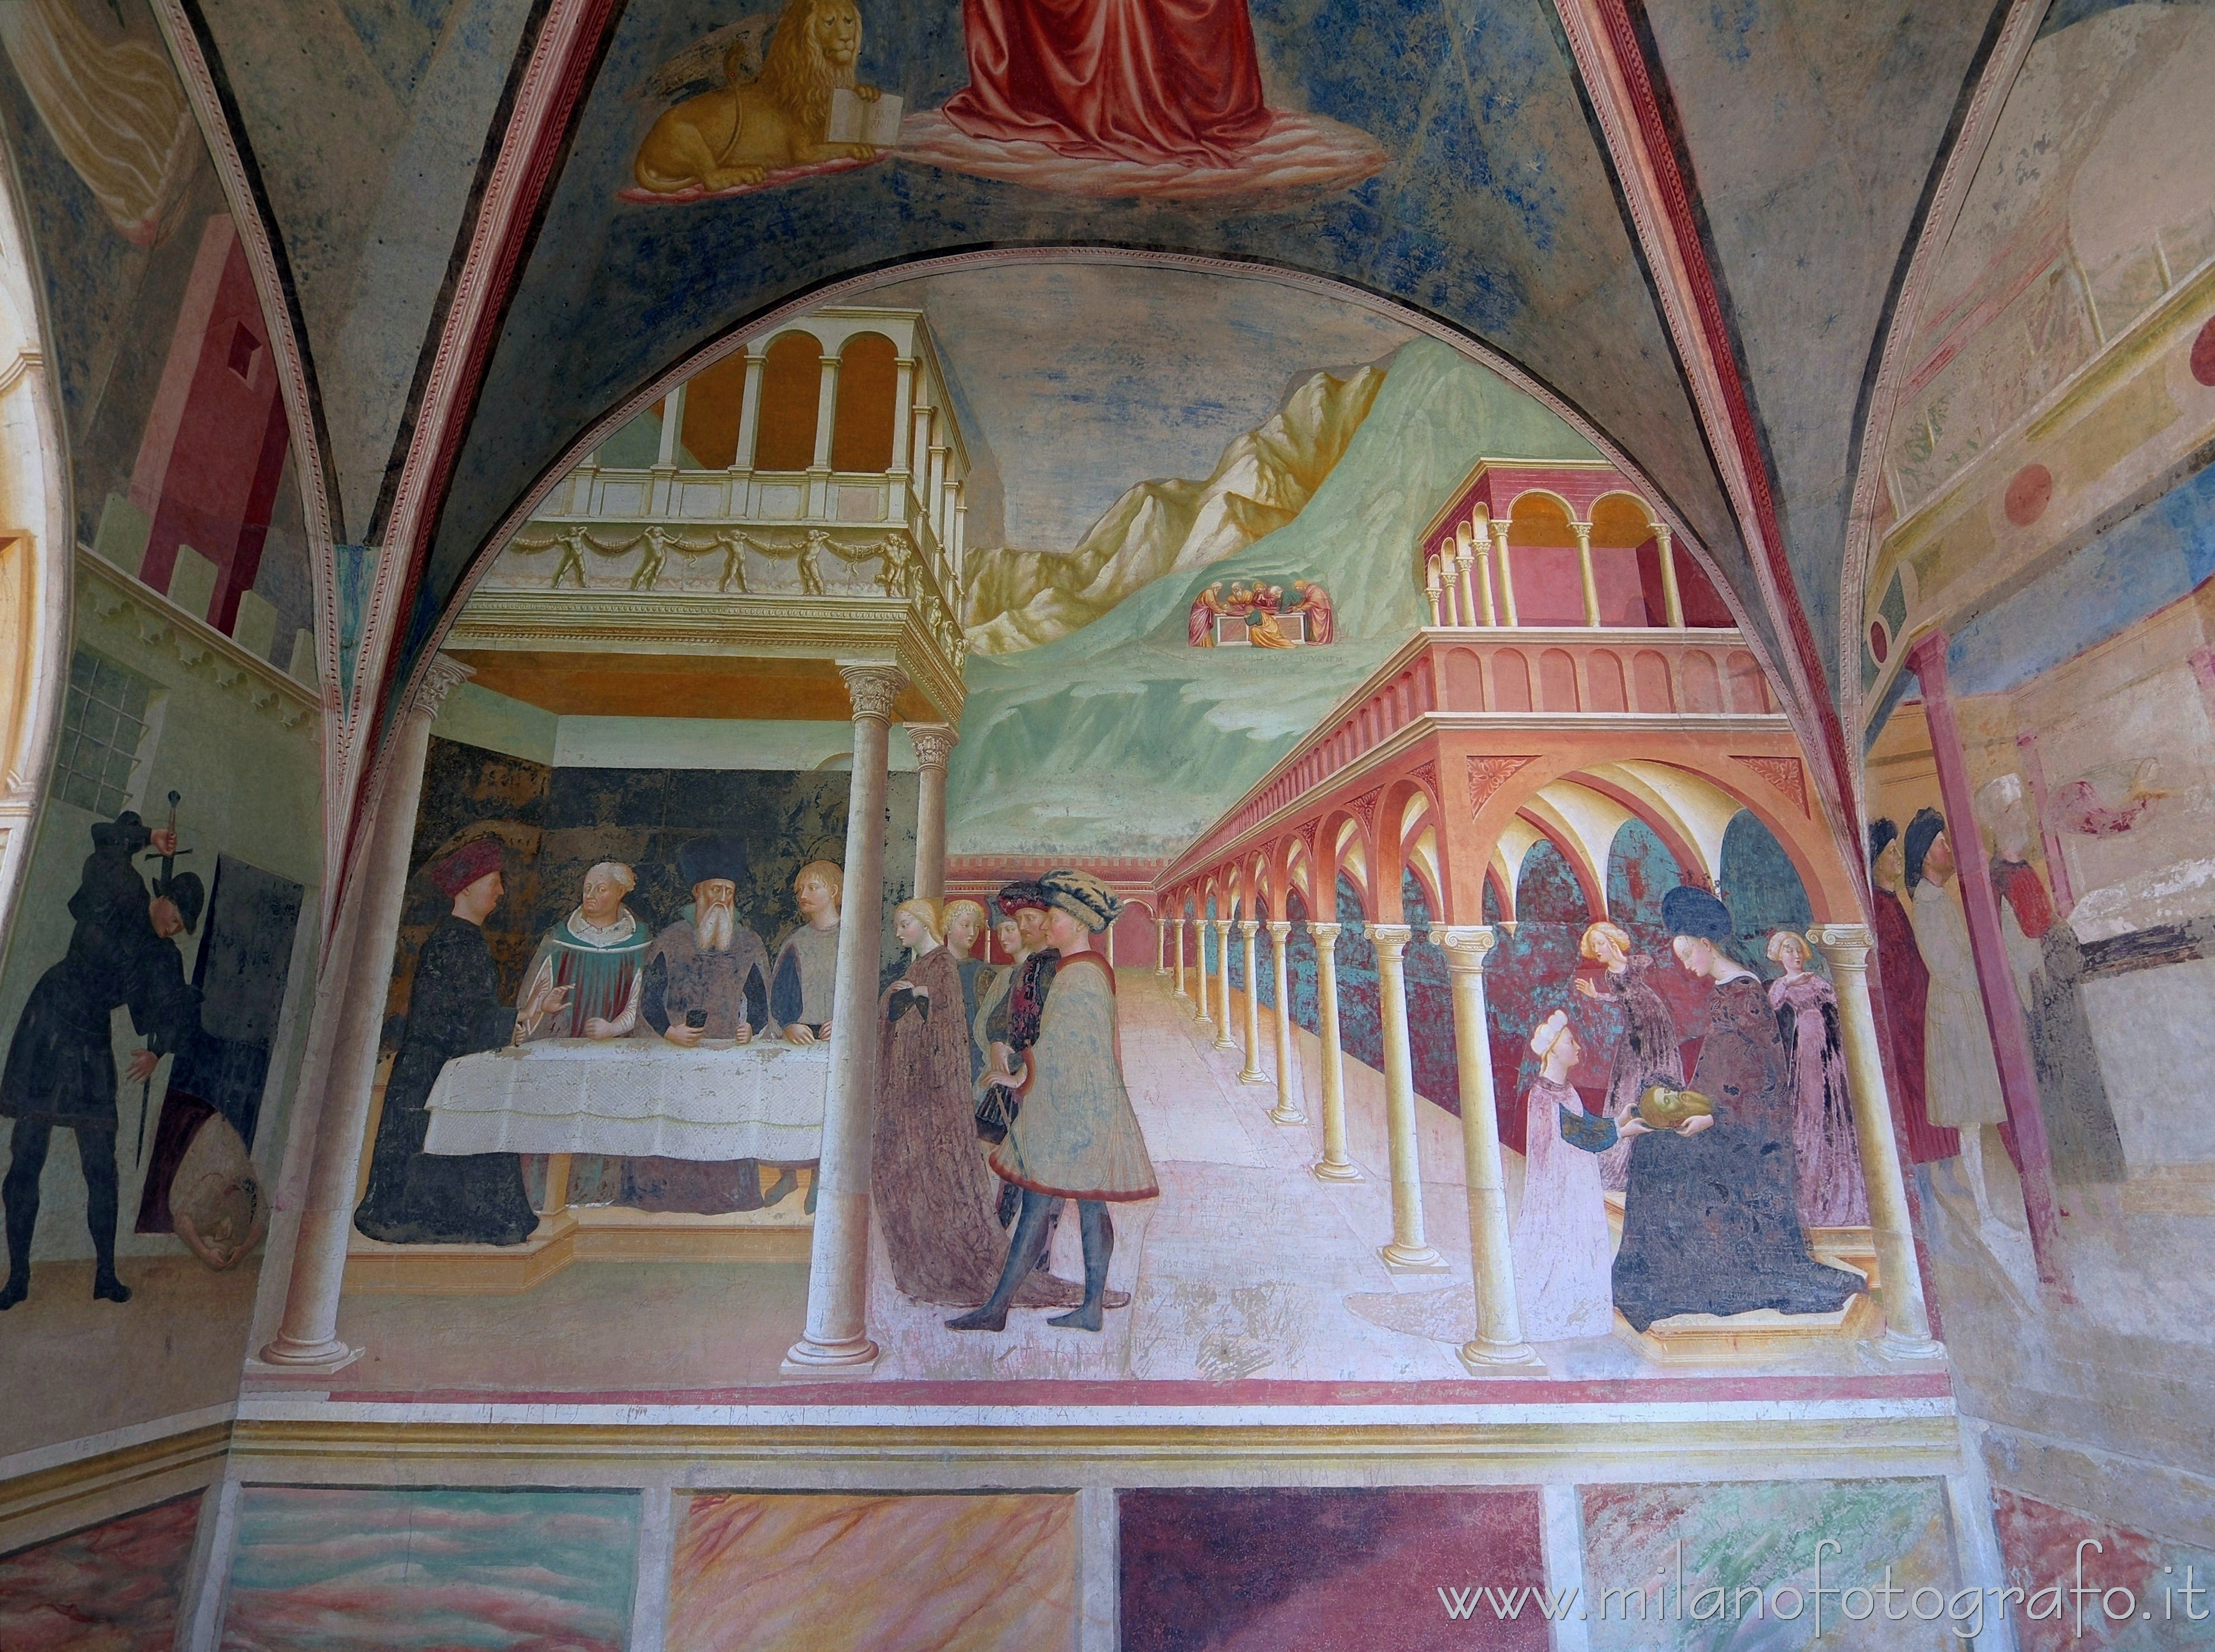 Castiglione Olona (Varese, Italy): Right wall of the baptistery of the Collegiata - Castiglione Olona (Varese, Italy)